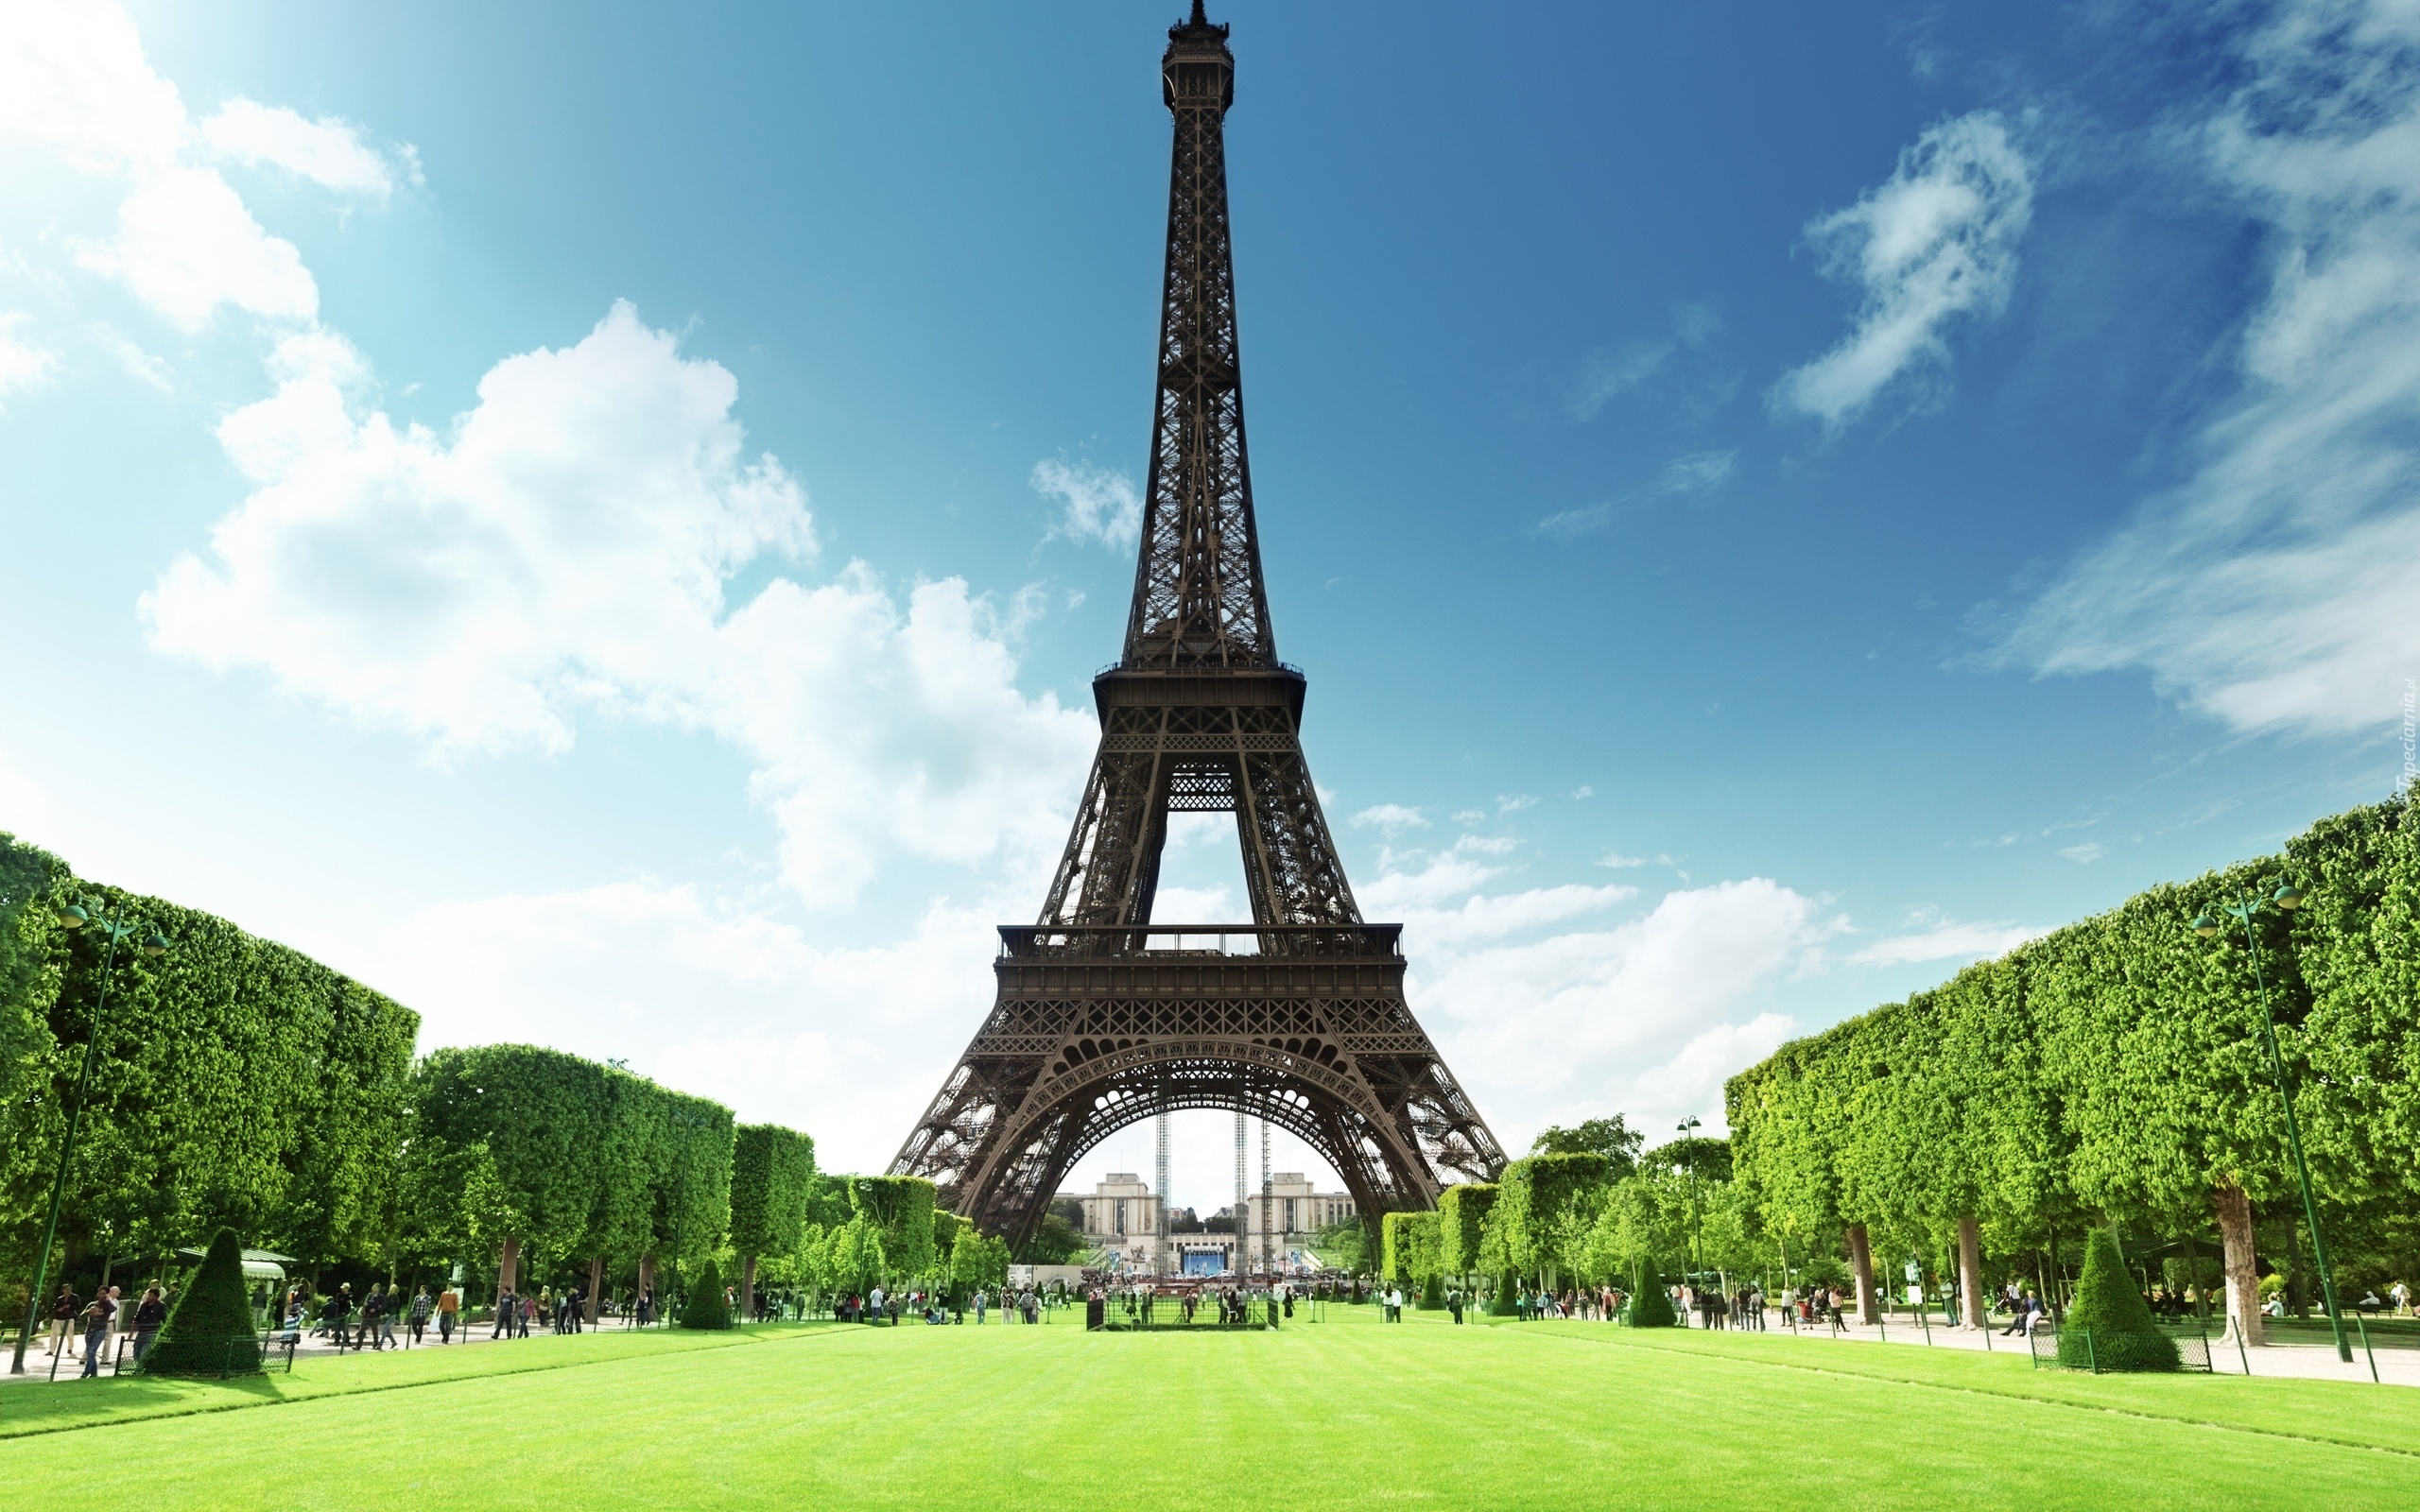 Wieża Eiffla, Paryż, Francja, Budowla, Budynek, Konstrukcja